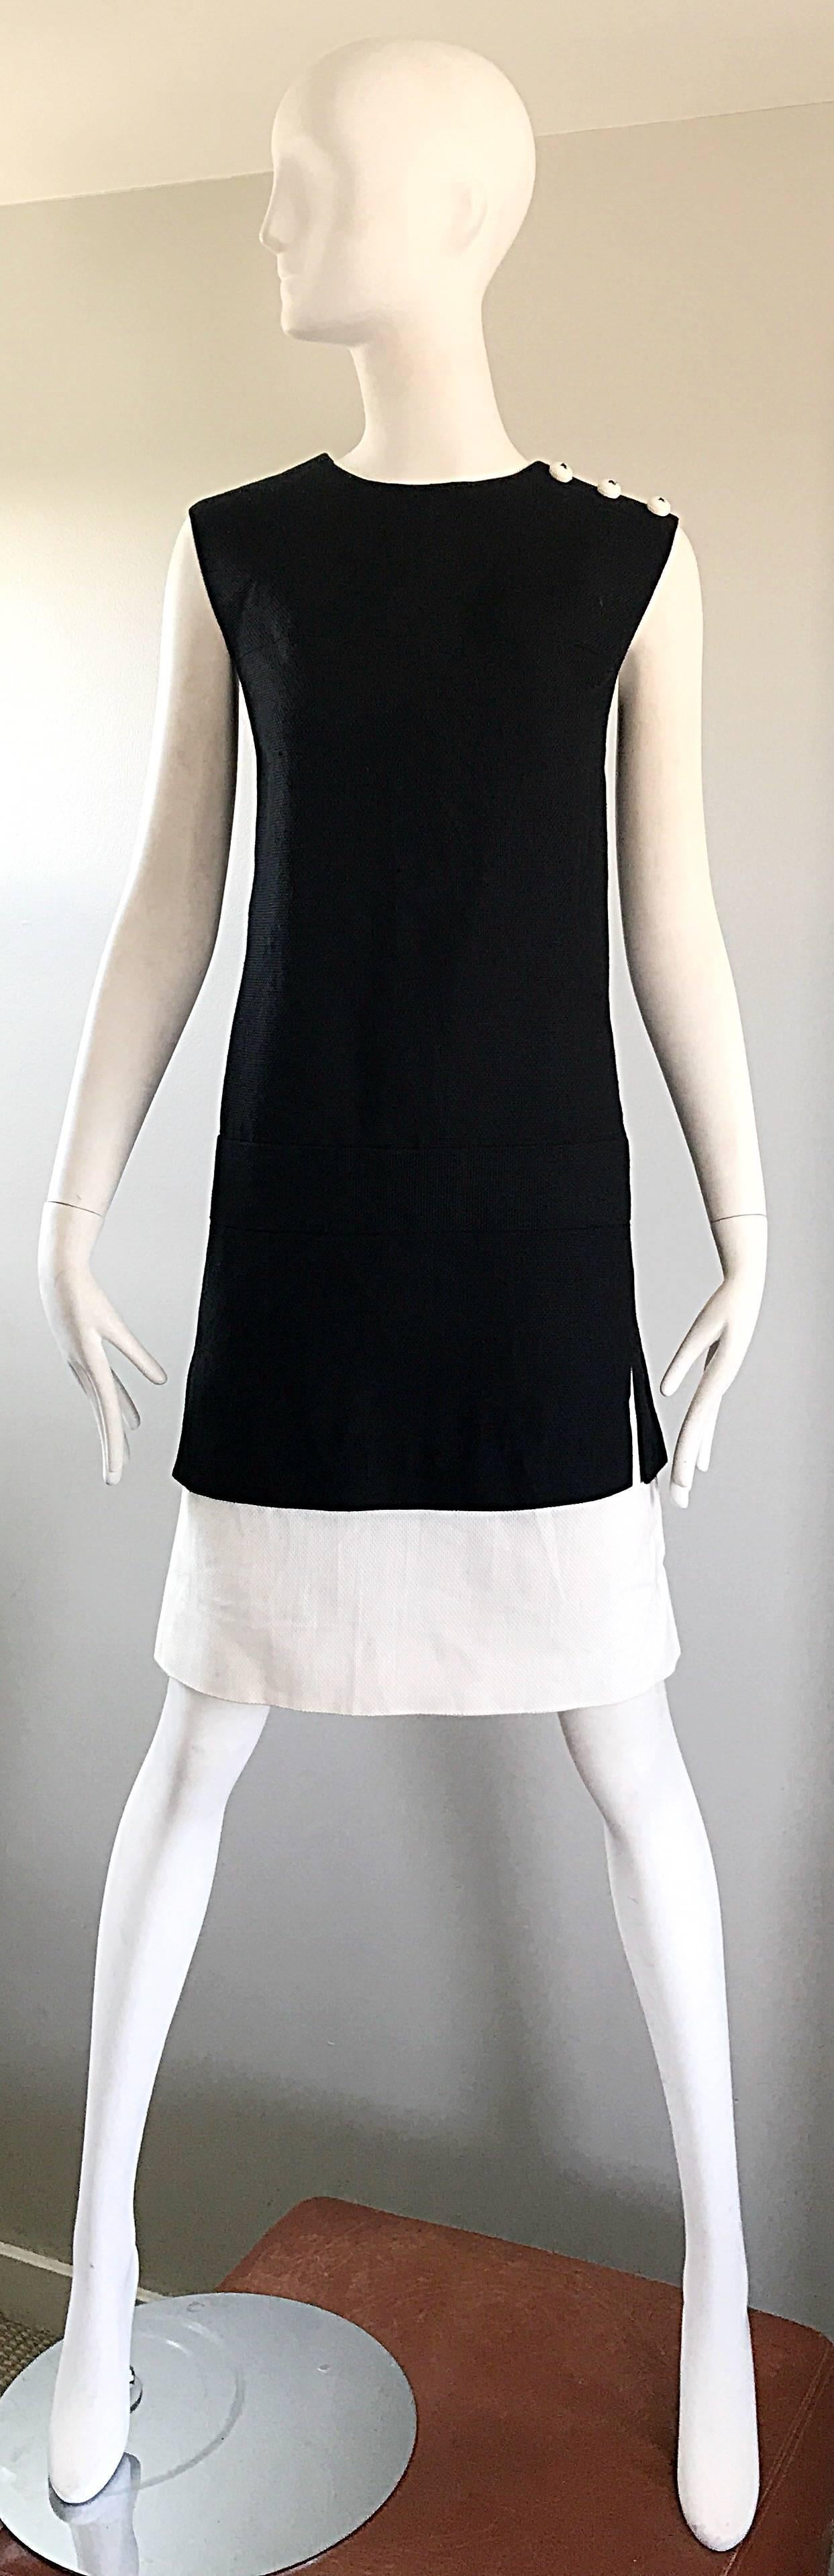 Robe droite HOWARD WOLF noire et blanche en coton et lin mélangés des années 1960 ! Une forme classique, avec juste ce qu'il faut d'élégance ! Trois boutons ronds blancs fantaisie à l'épaule gauche. Des panneaux blancs sous la jupe apparaissent à